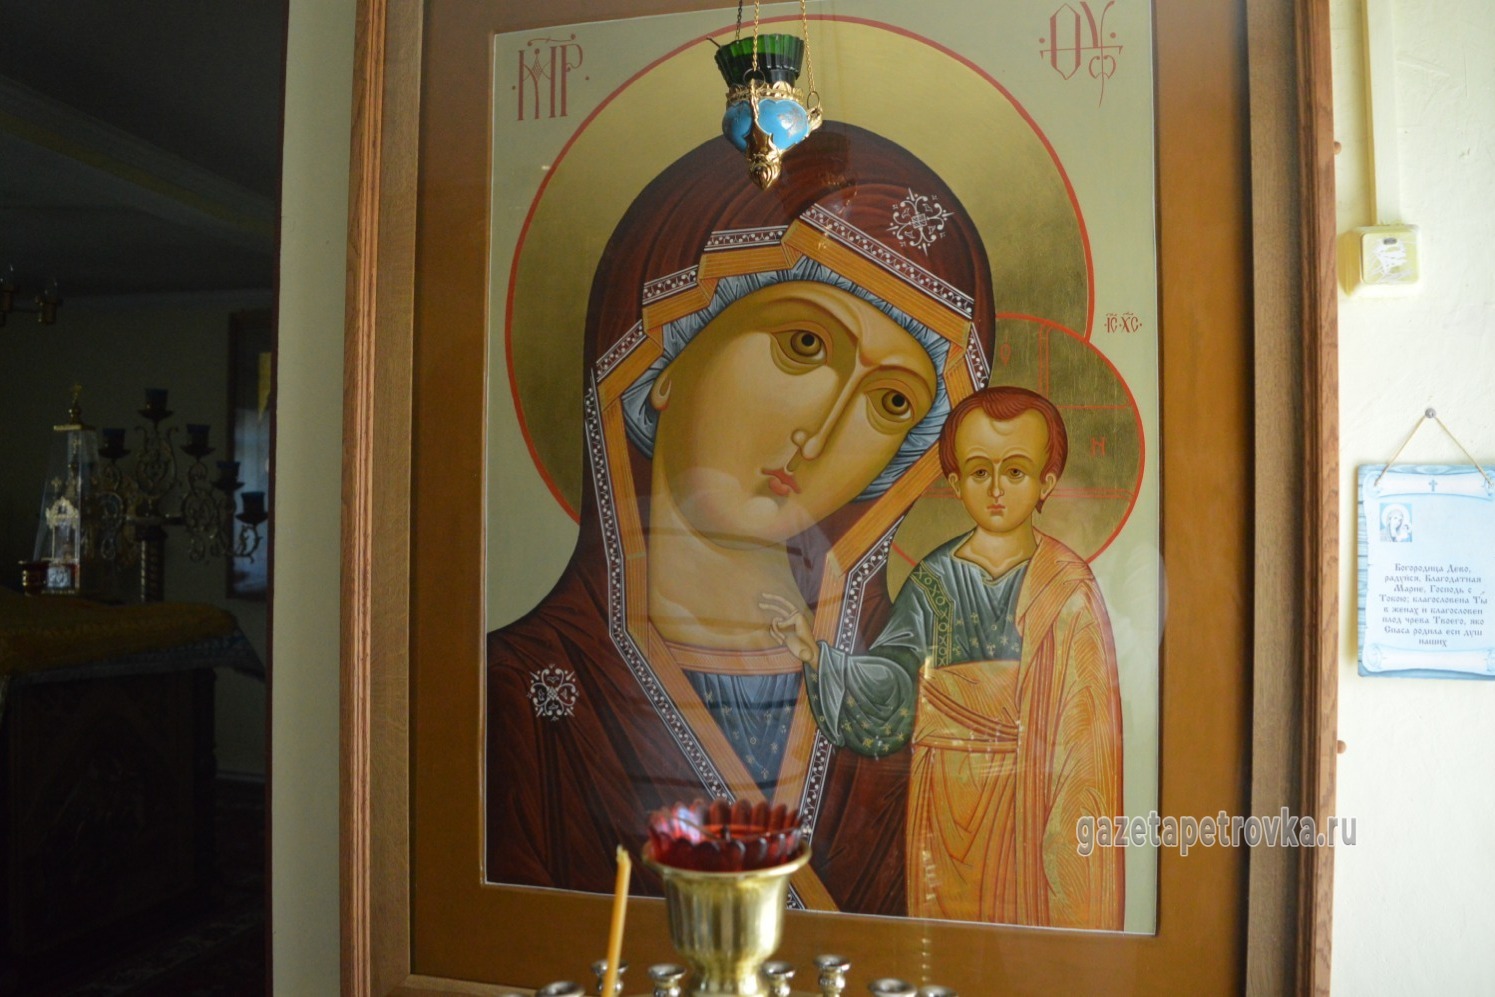 Икона Казанской Божией Матери написана в мастерской по древнерусским канонам